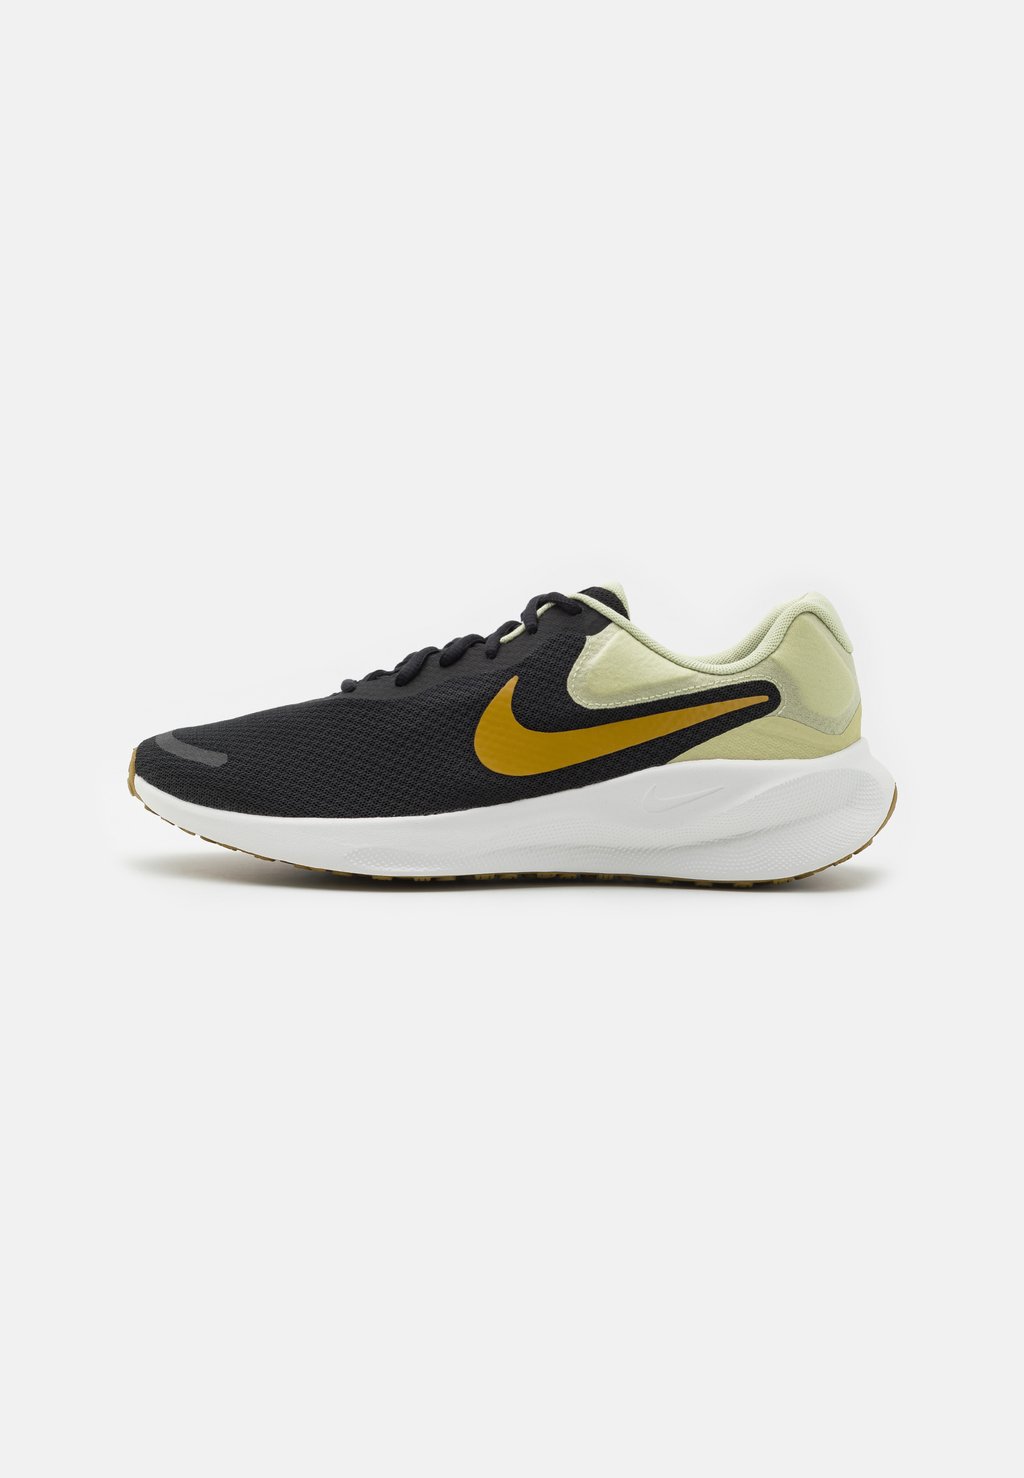 Нейтральные кроссовки REVOLUTION 7 Nike, цвет black/bronzine/olive aura/summit white